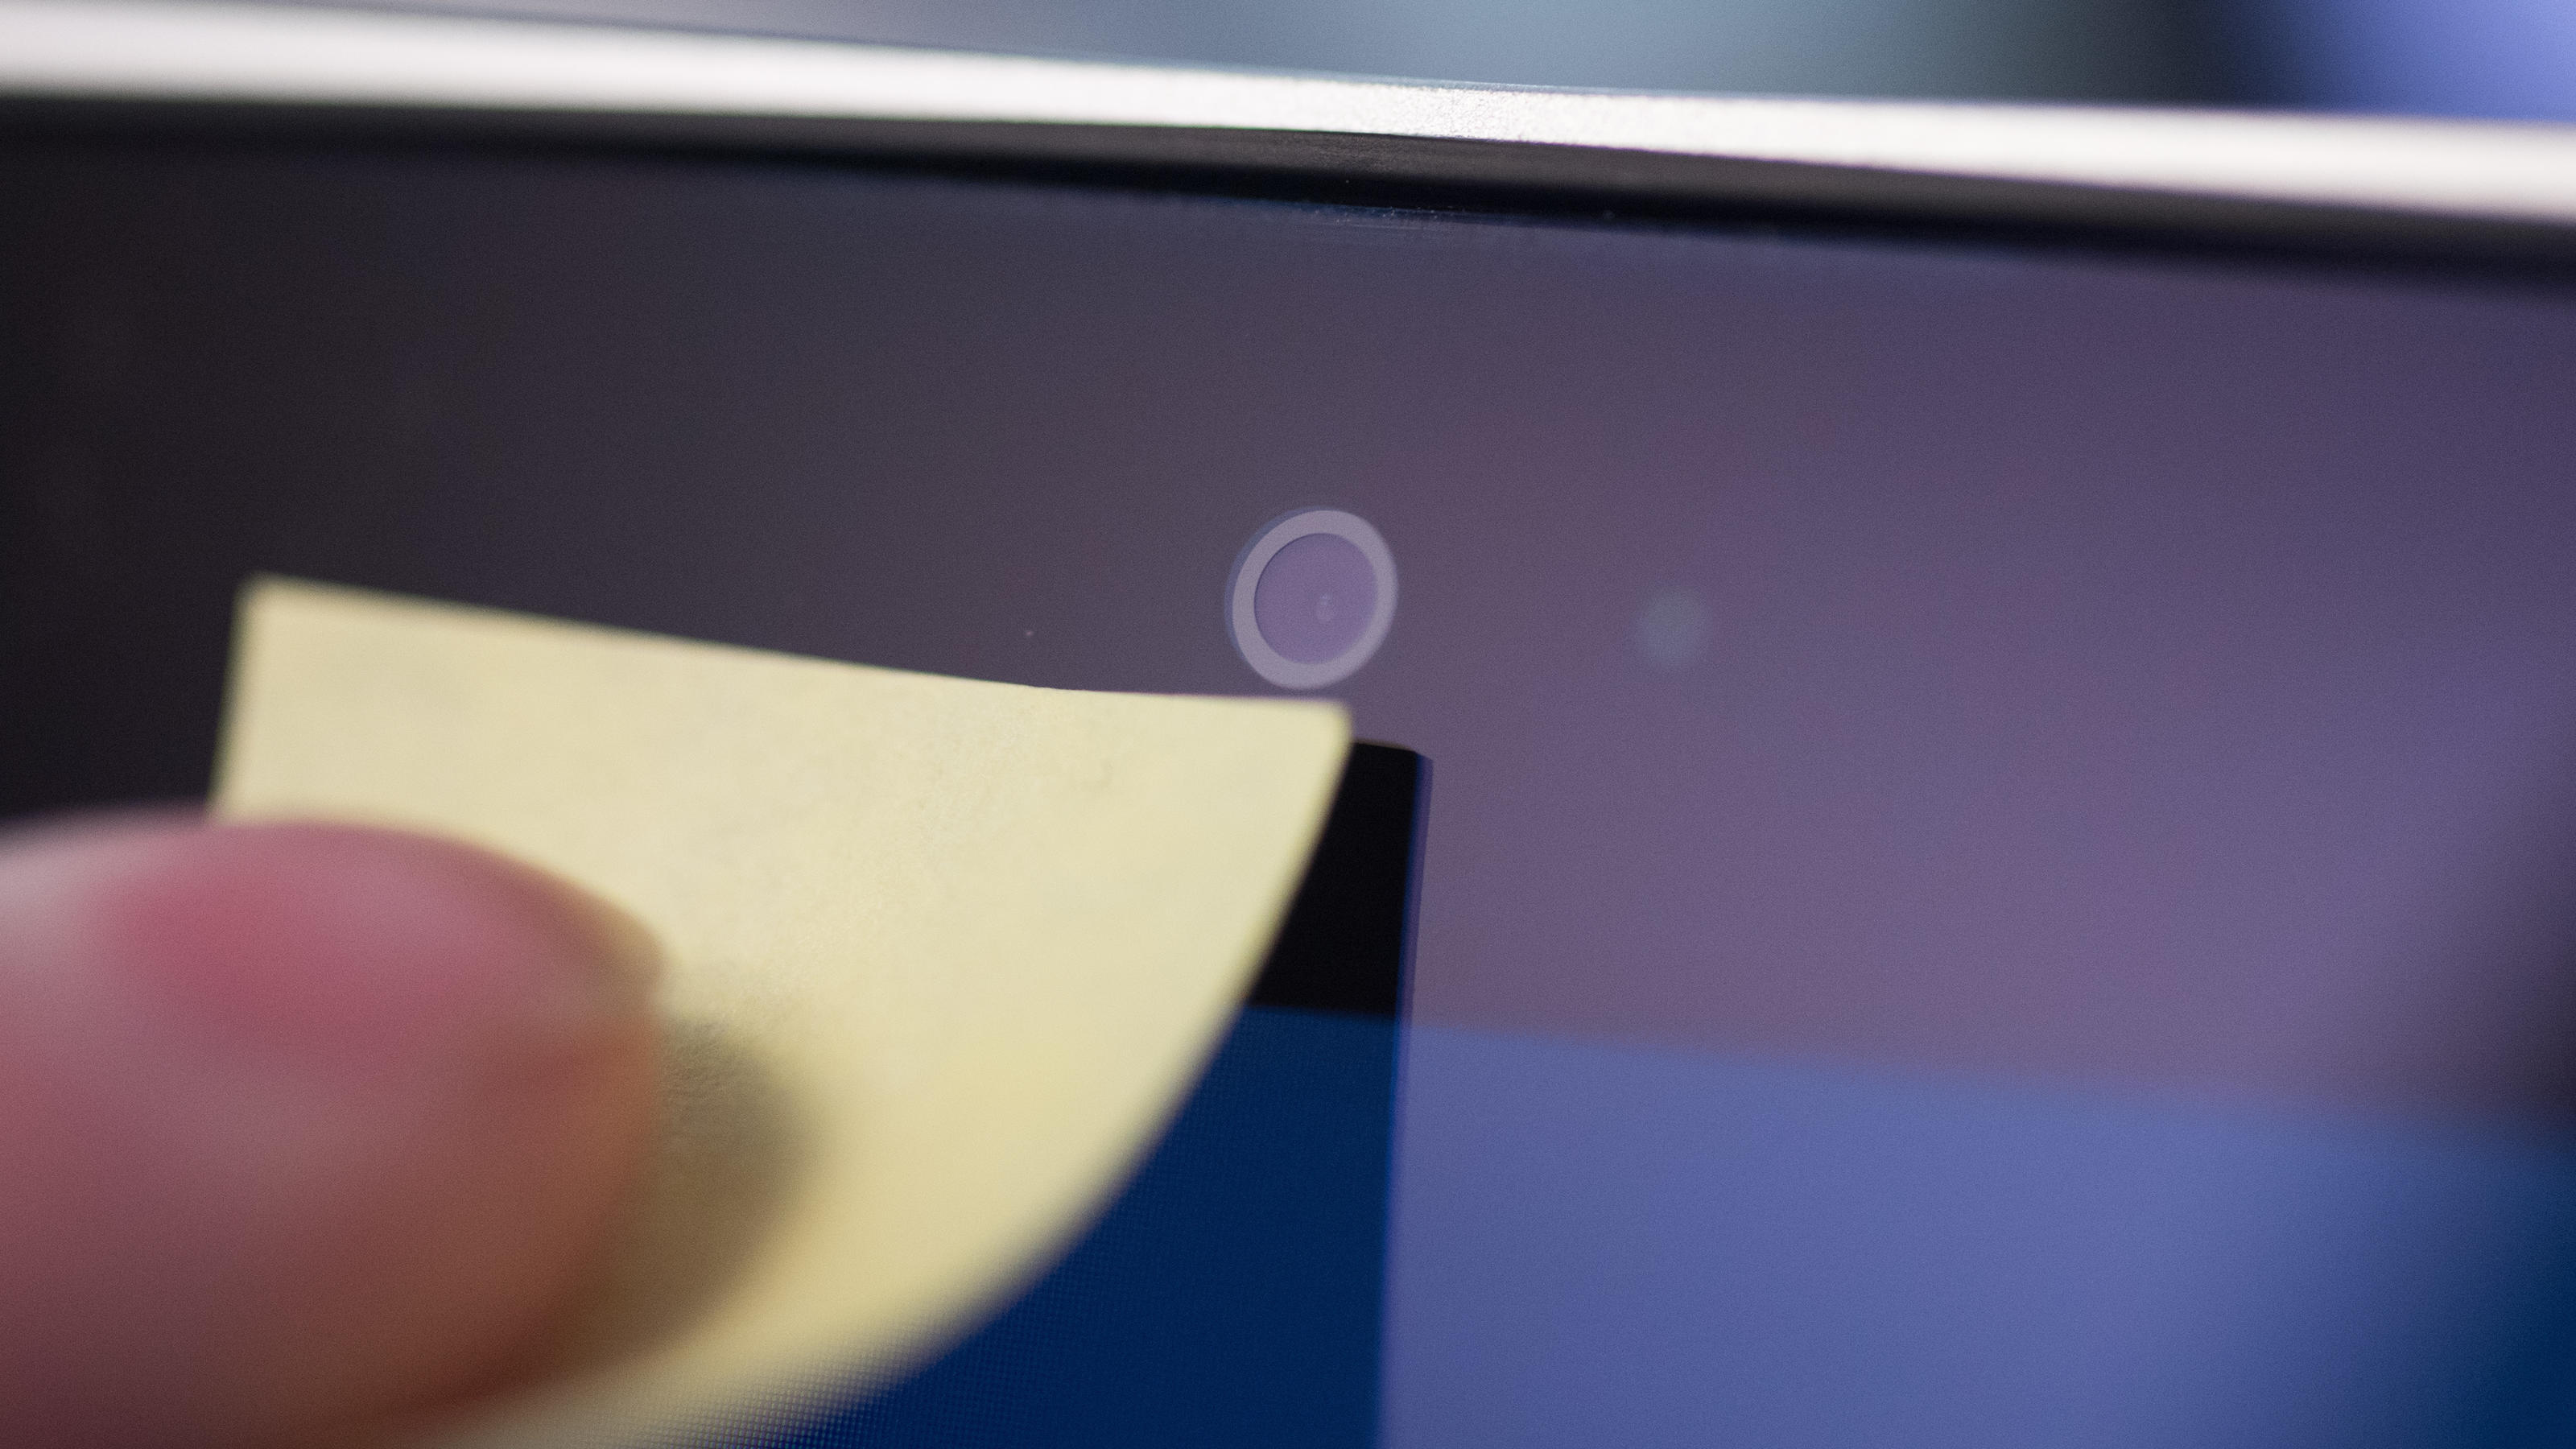 Apple warnt: Darum sollte man die Laptop-Kamera lieber nicht abkleben